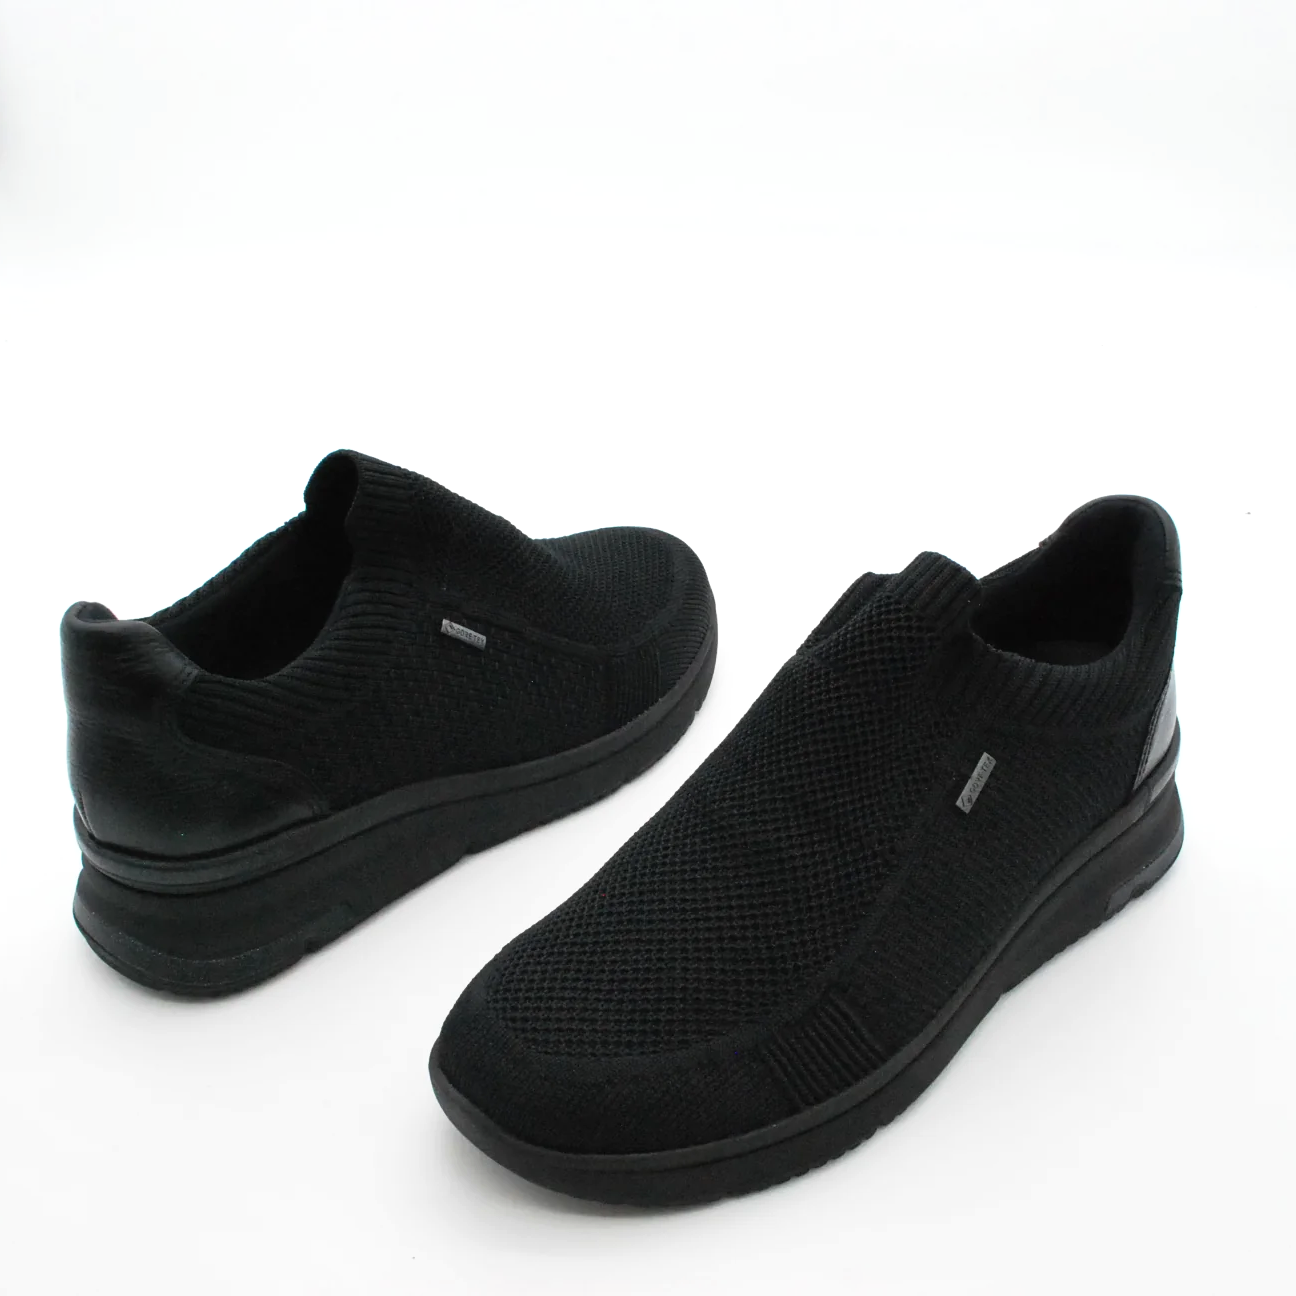 sneakers-ara-in-tessuto-tecnico-comfort-2.png